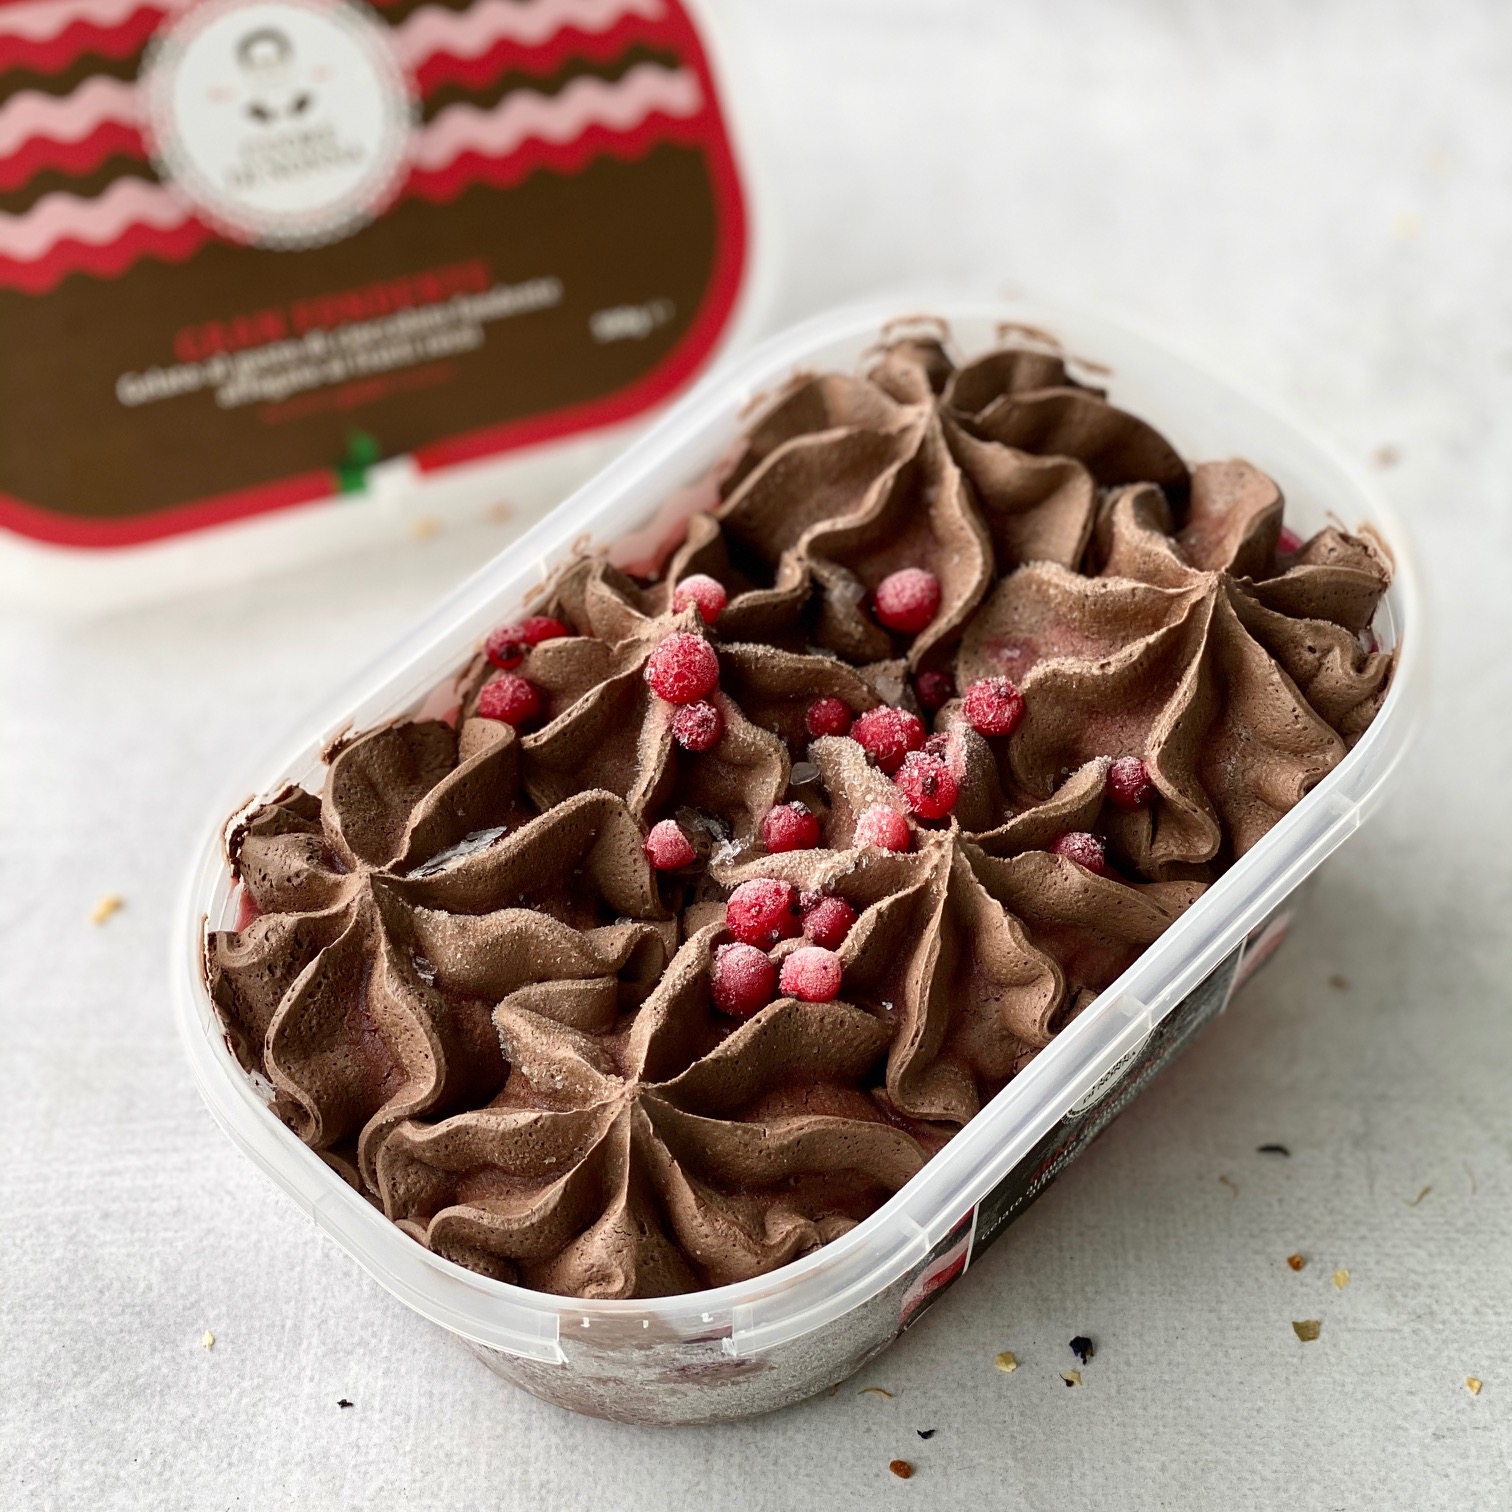 Итальянское мороженое с шоколадным вкусом и красными ягодами изображение 1